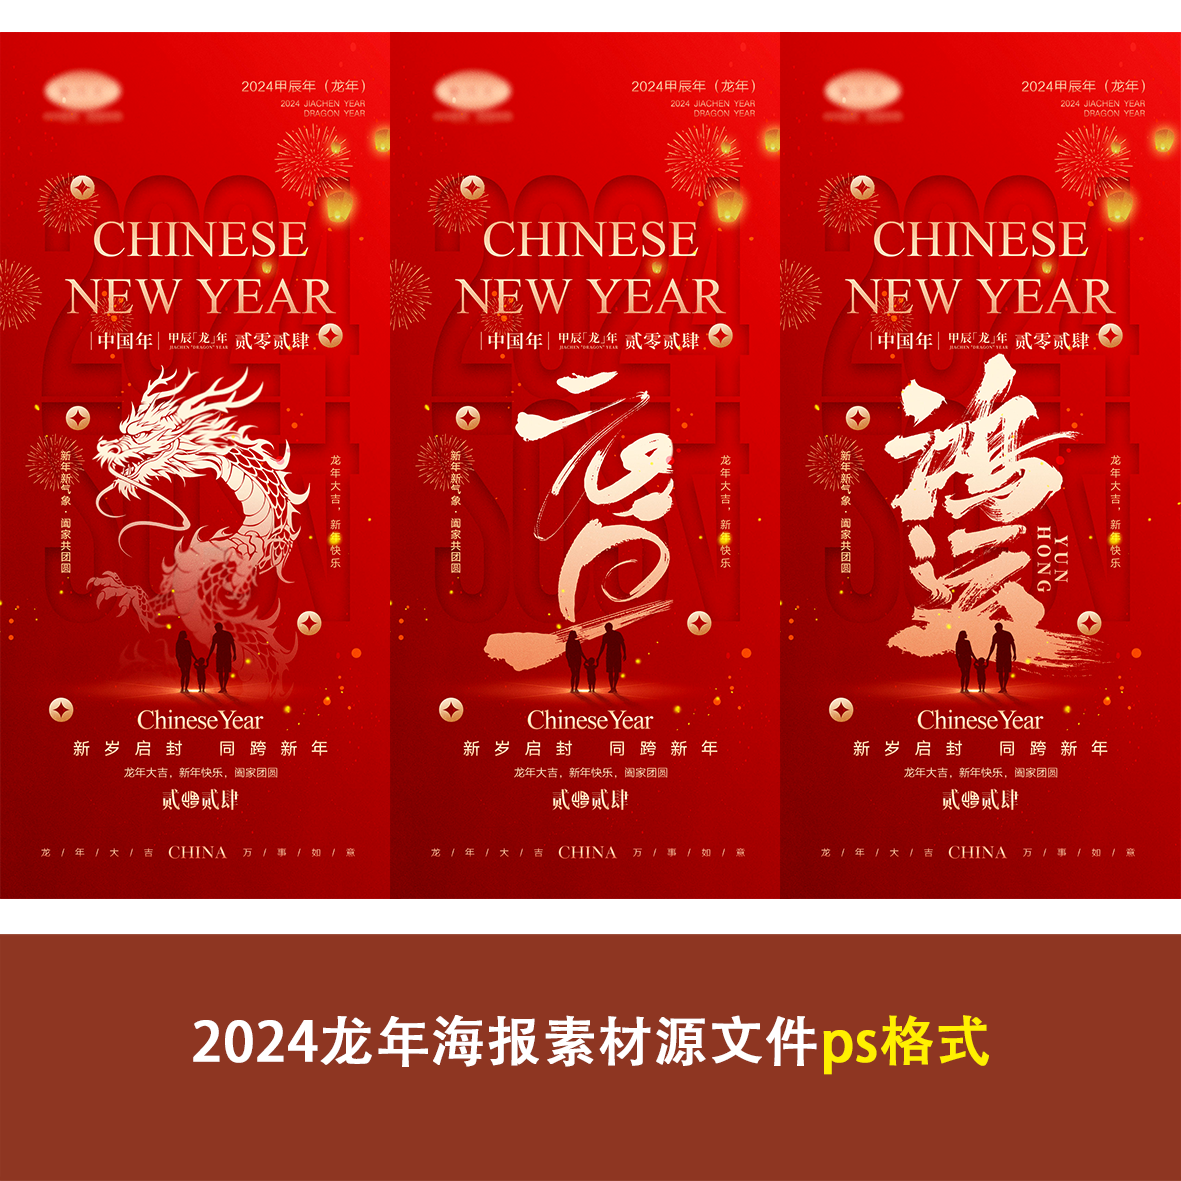 2024龙年新年春节元旦新春节日宣传海报手机壁纸配图ps设计素材